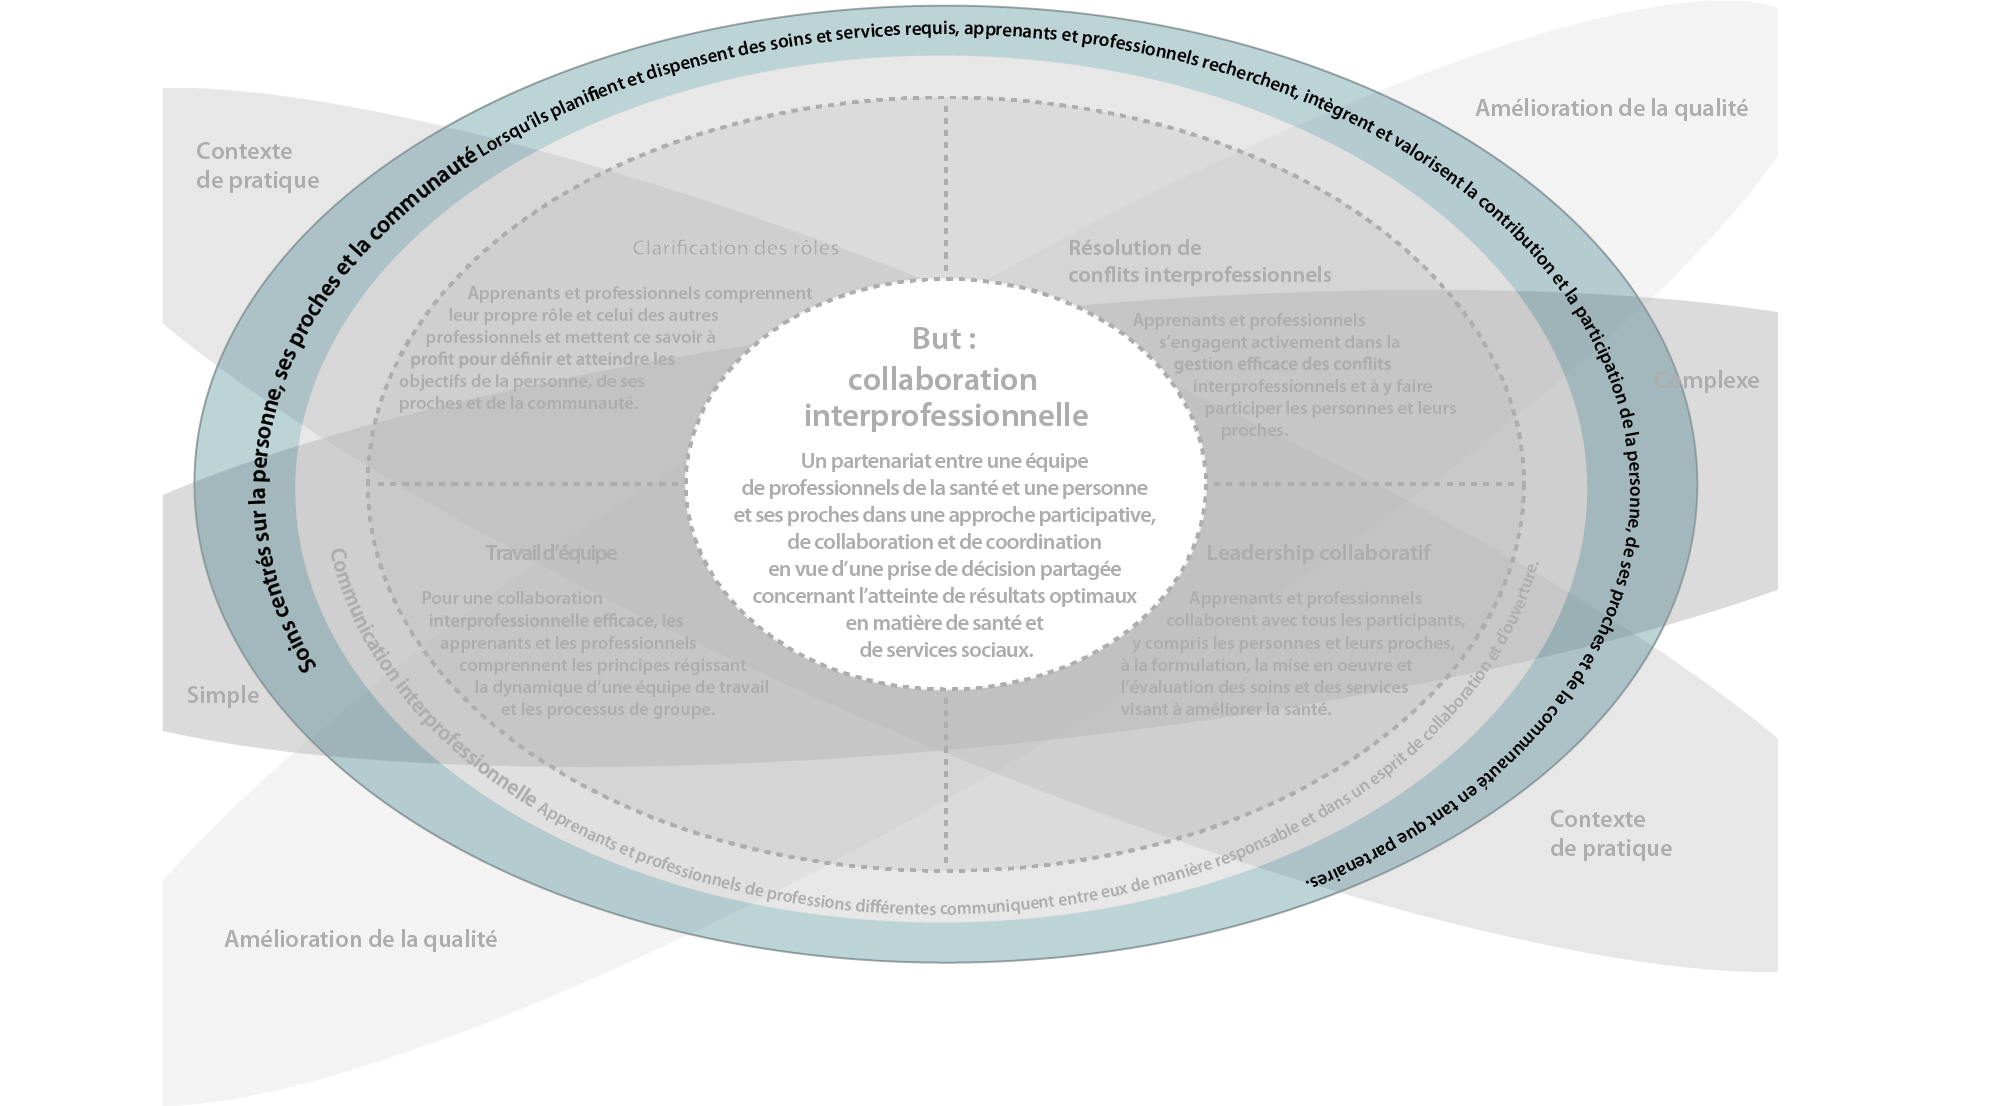 Schéma illustrant les six domaines de compétences interprofessionnelles